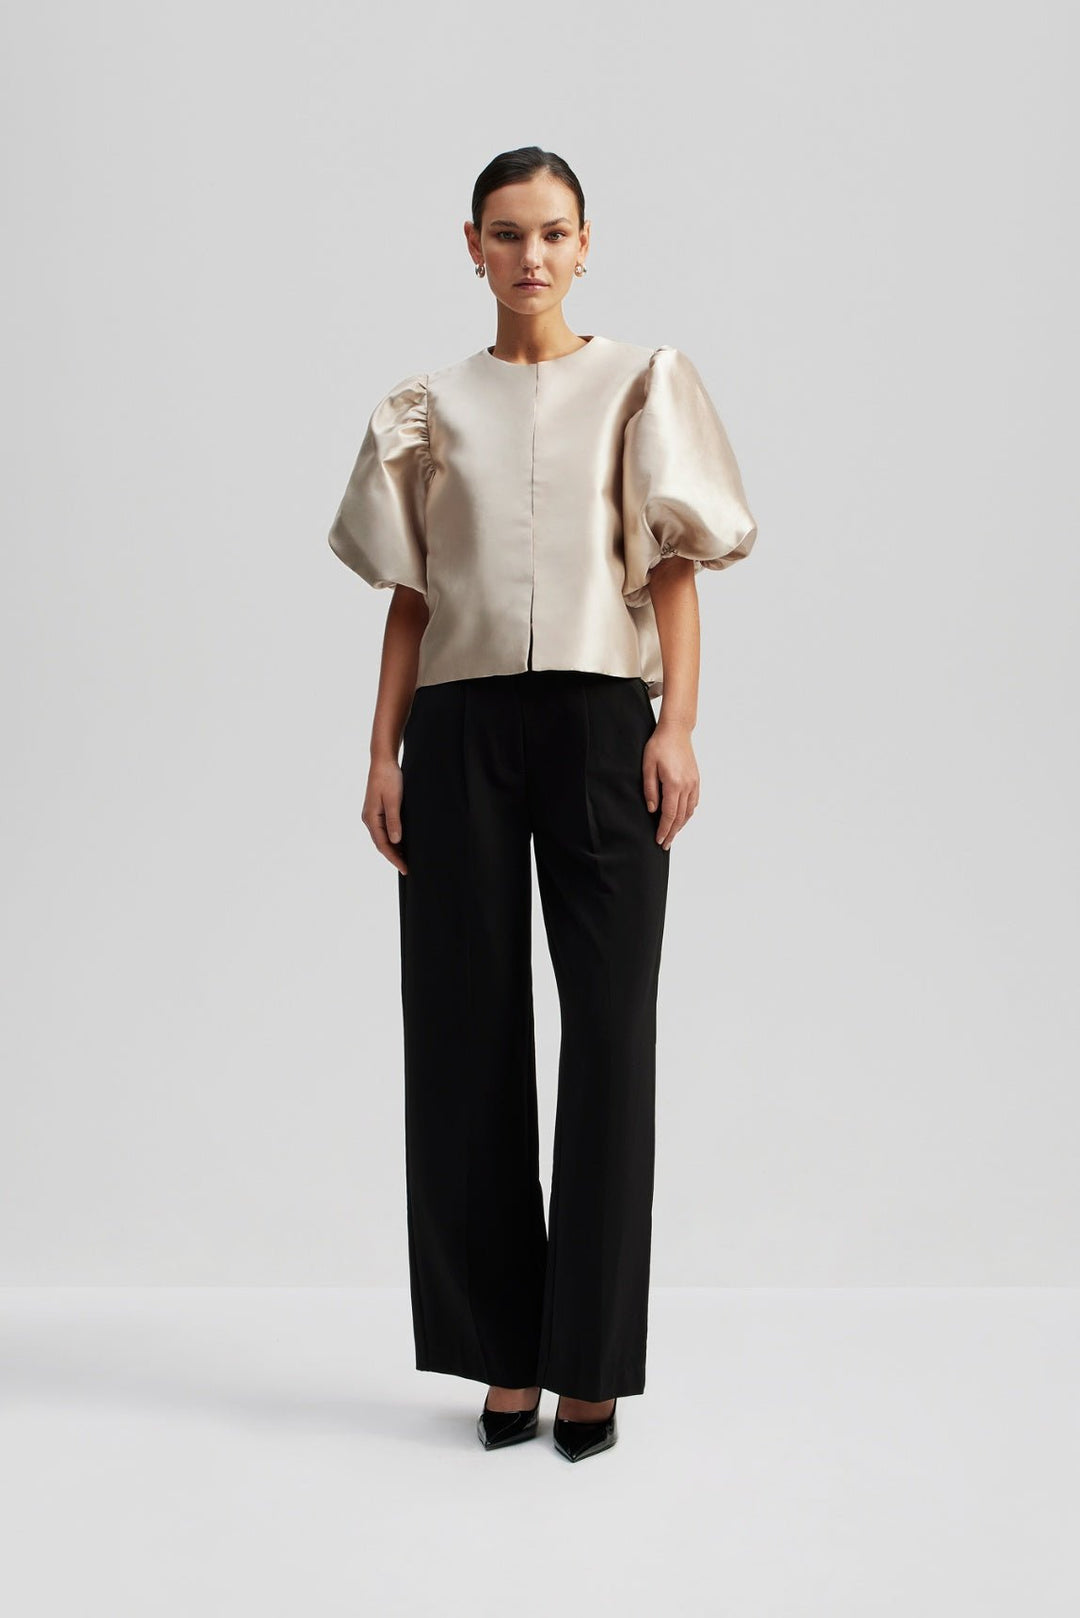 Cleo Pouf Sleeve Blouse Soft Beige | Skjorter og bluser | Smuk - Dameklær på nett